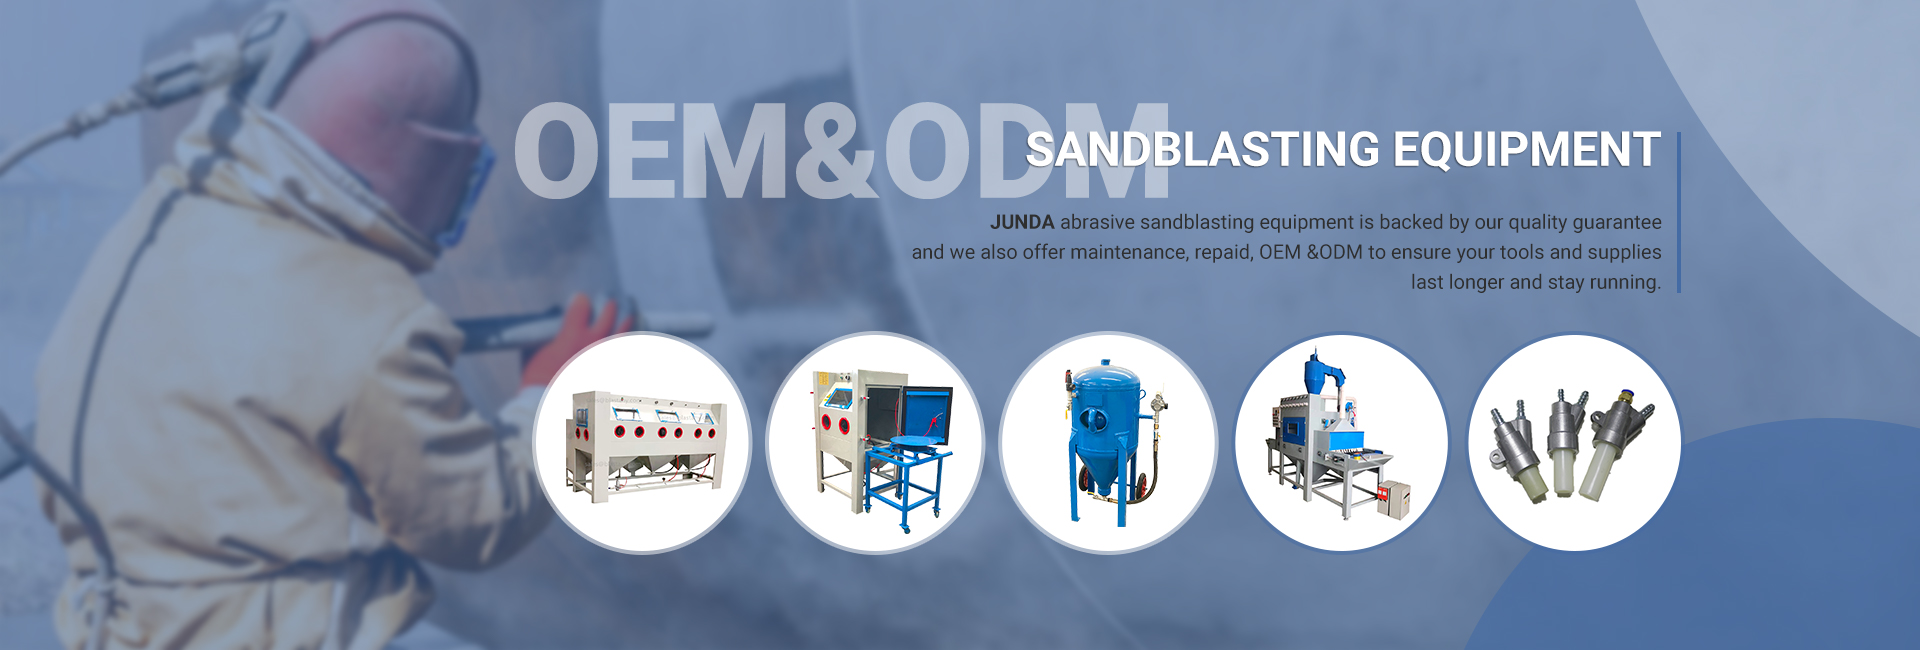 sandblasting equipment/